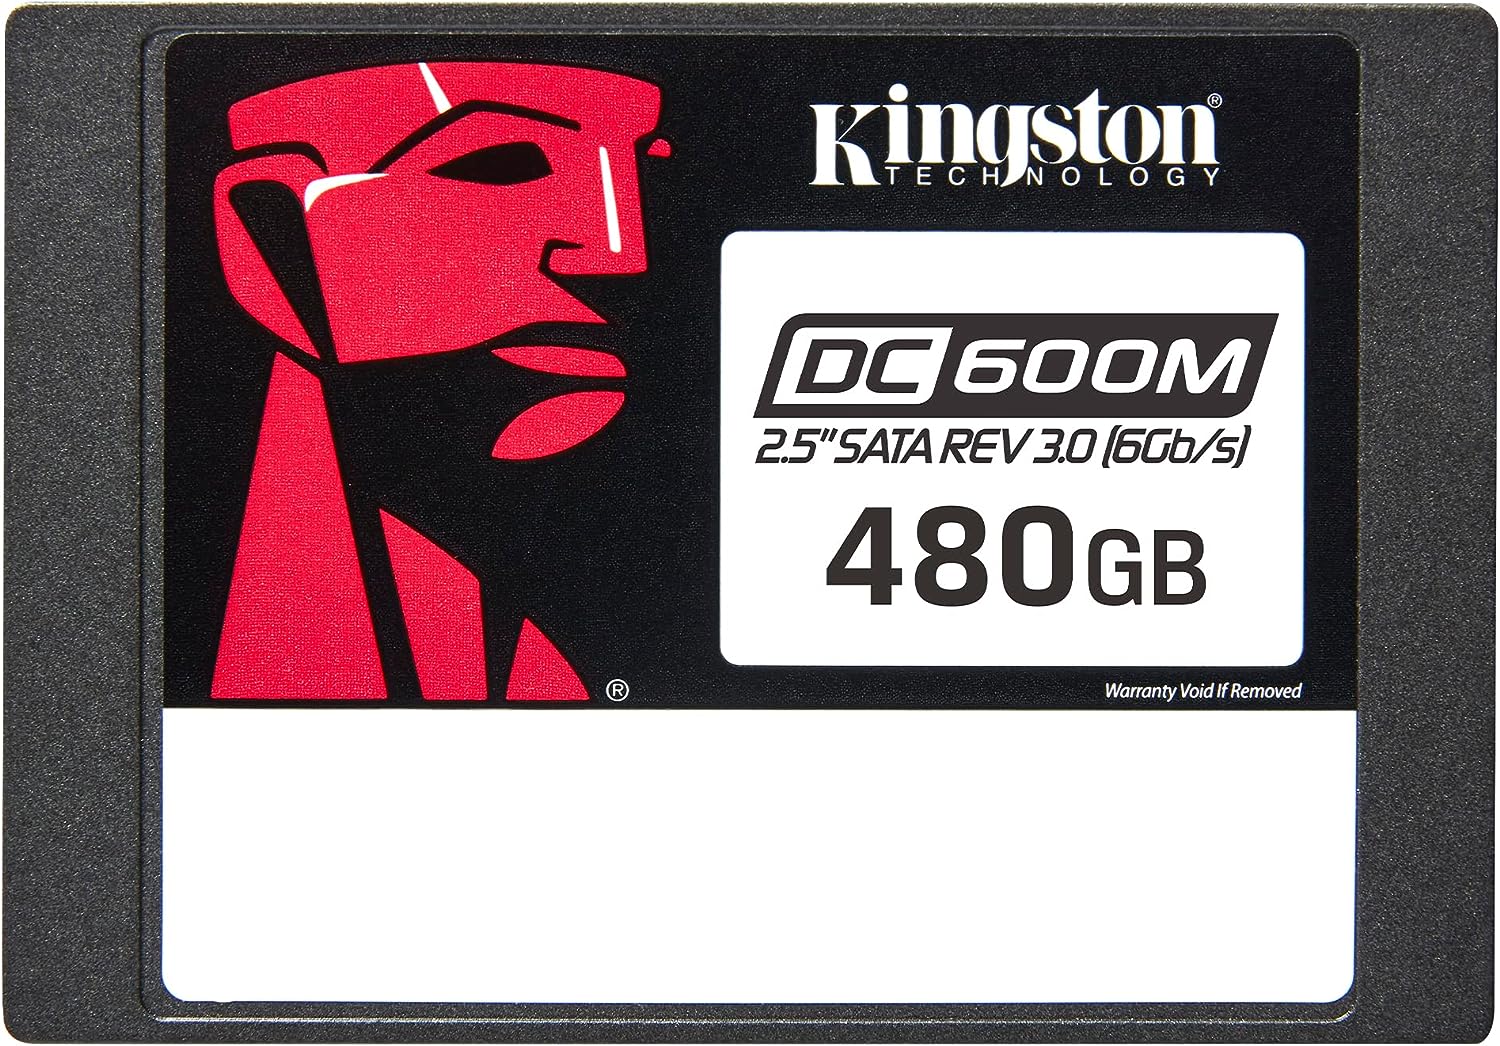 KINGSTON SSD DC600M 480GB 2.5 SATA3 ENTERPRISE